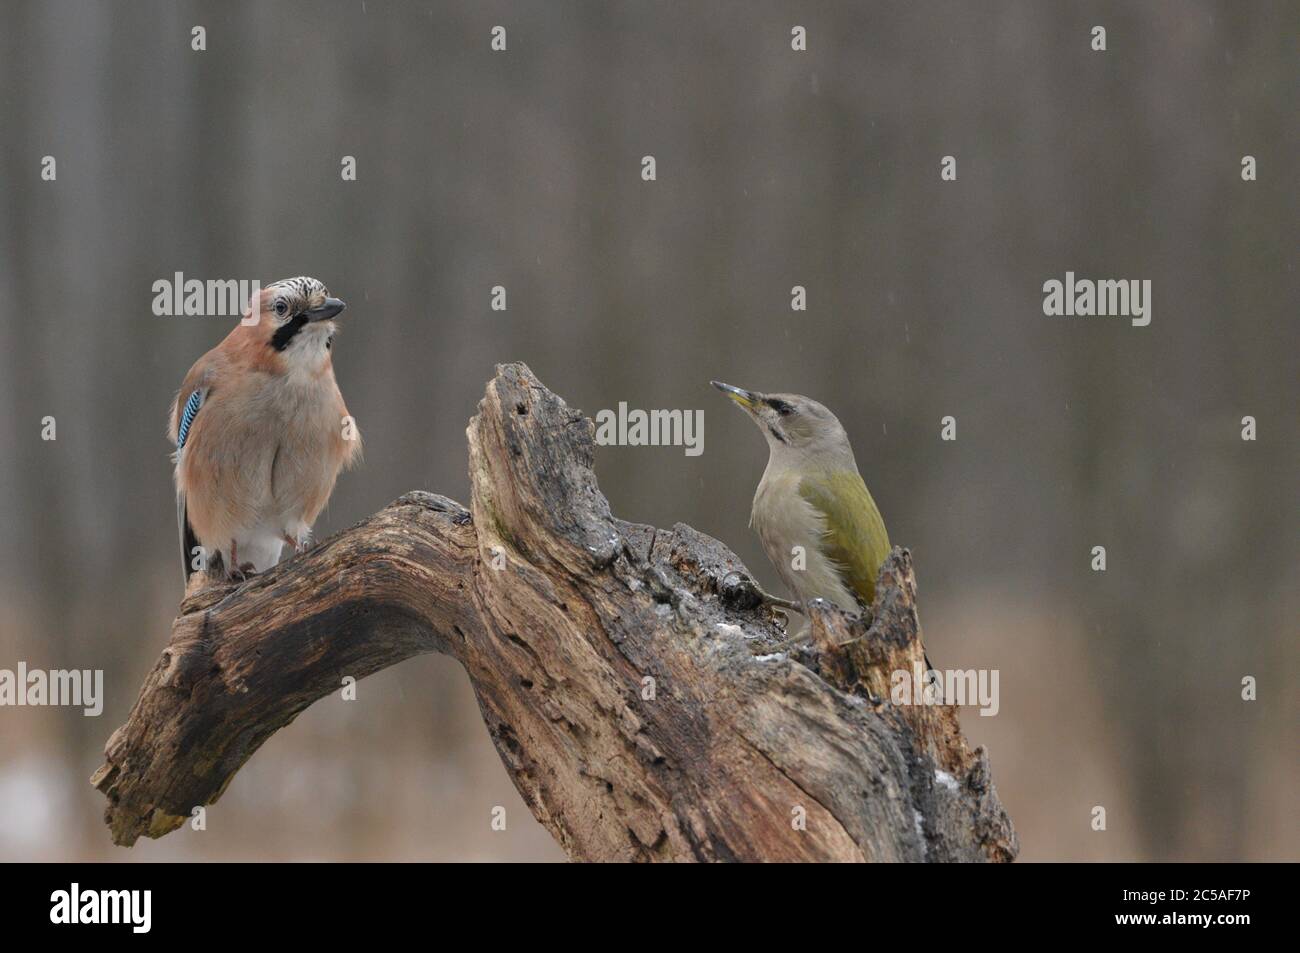 Grey headed woodpecker vs Common jay on the same bench. Stock Photo